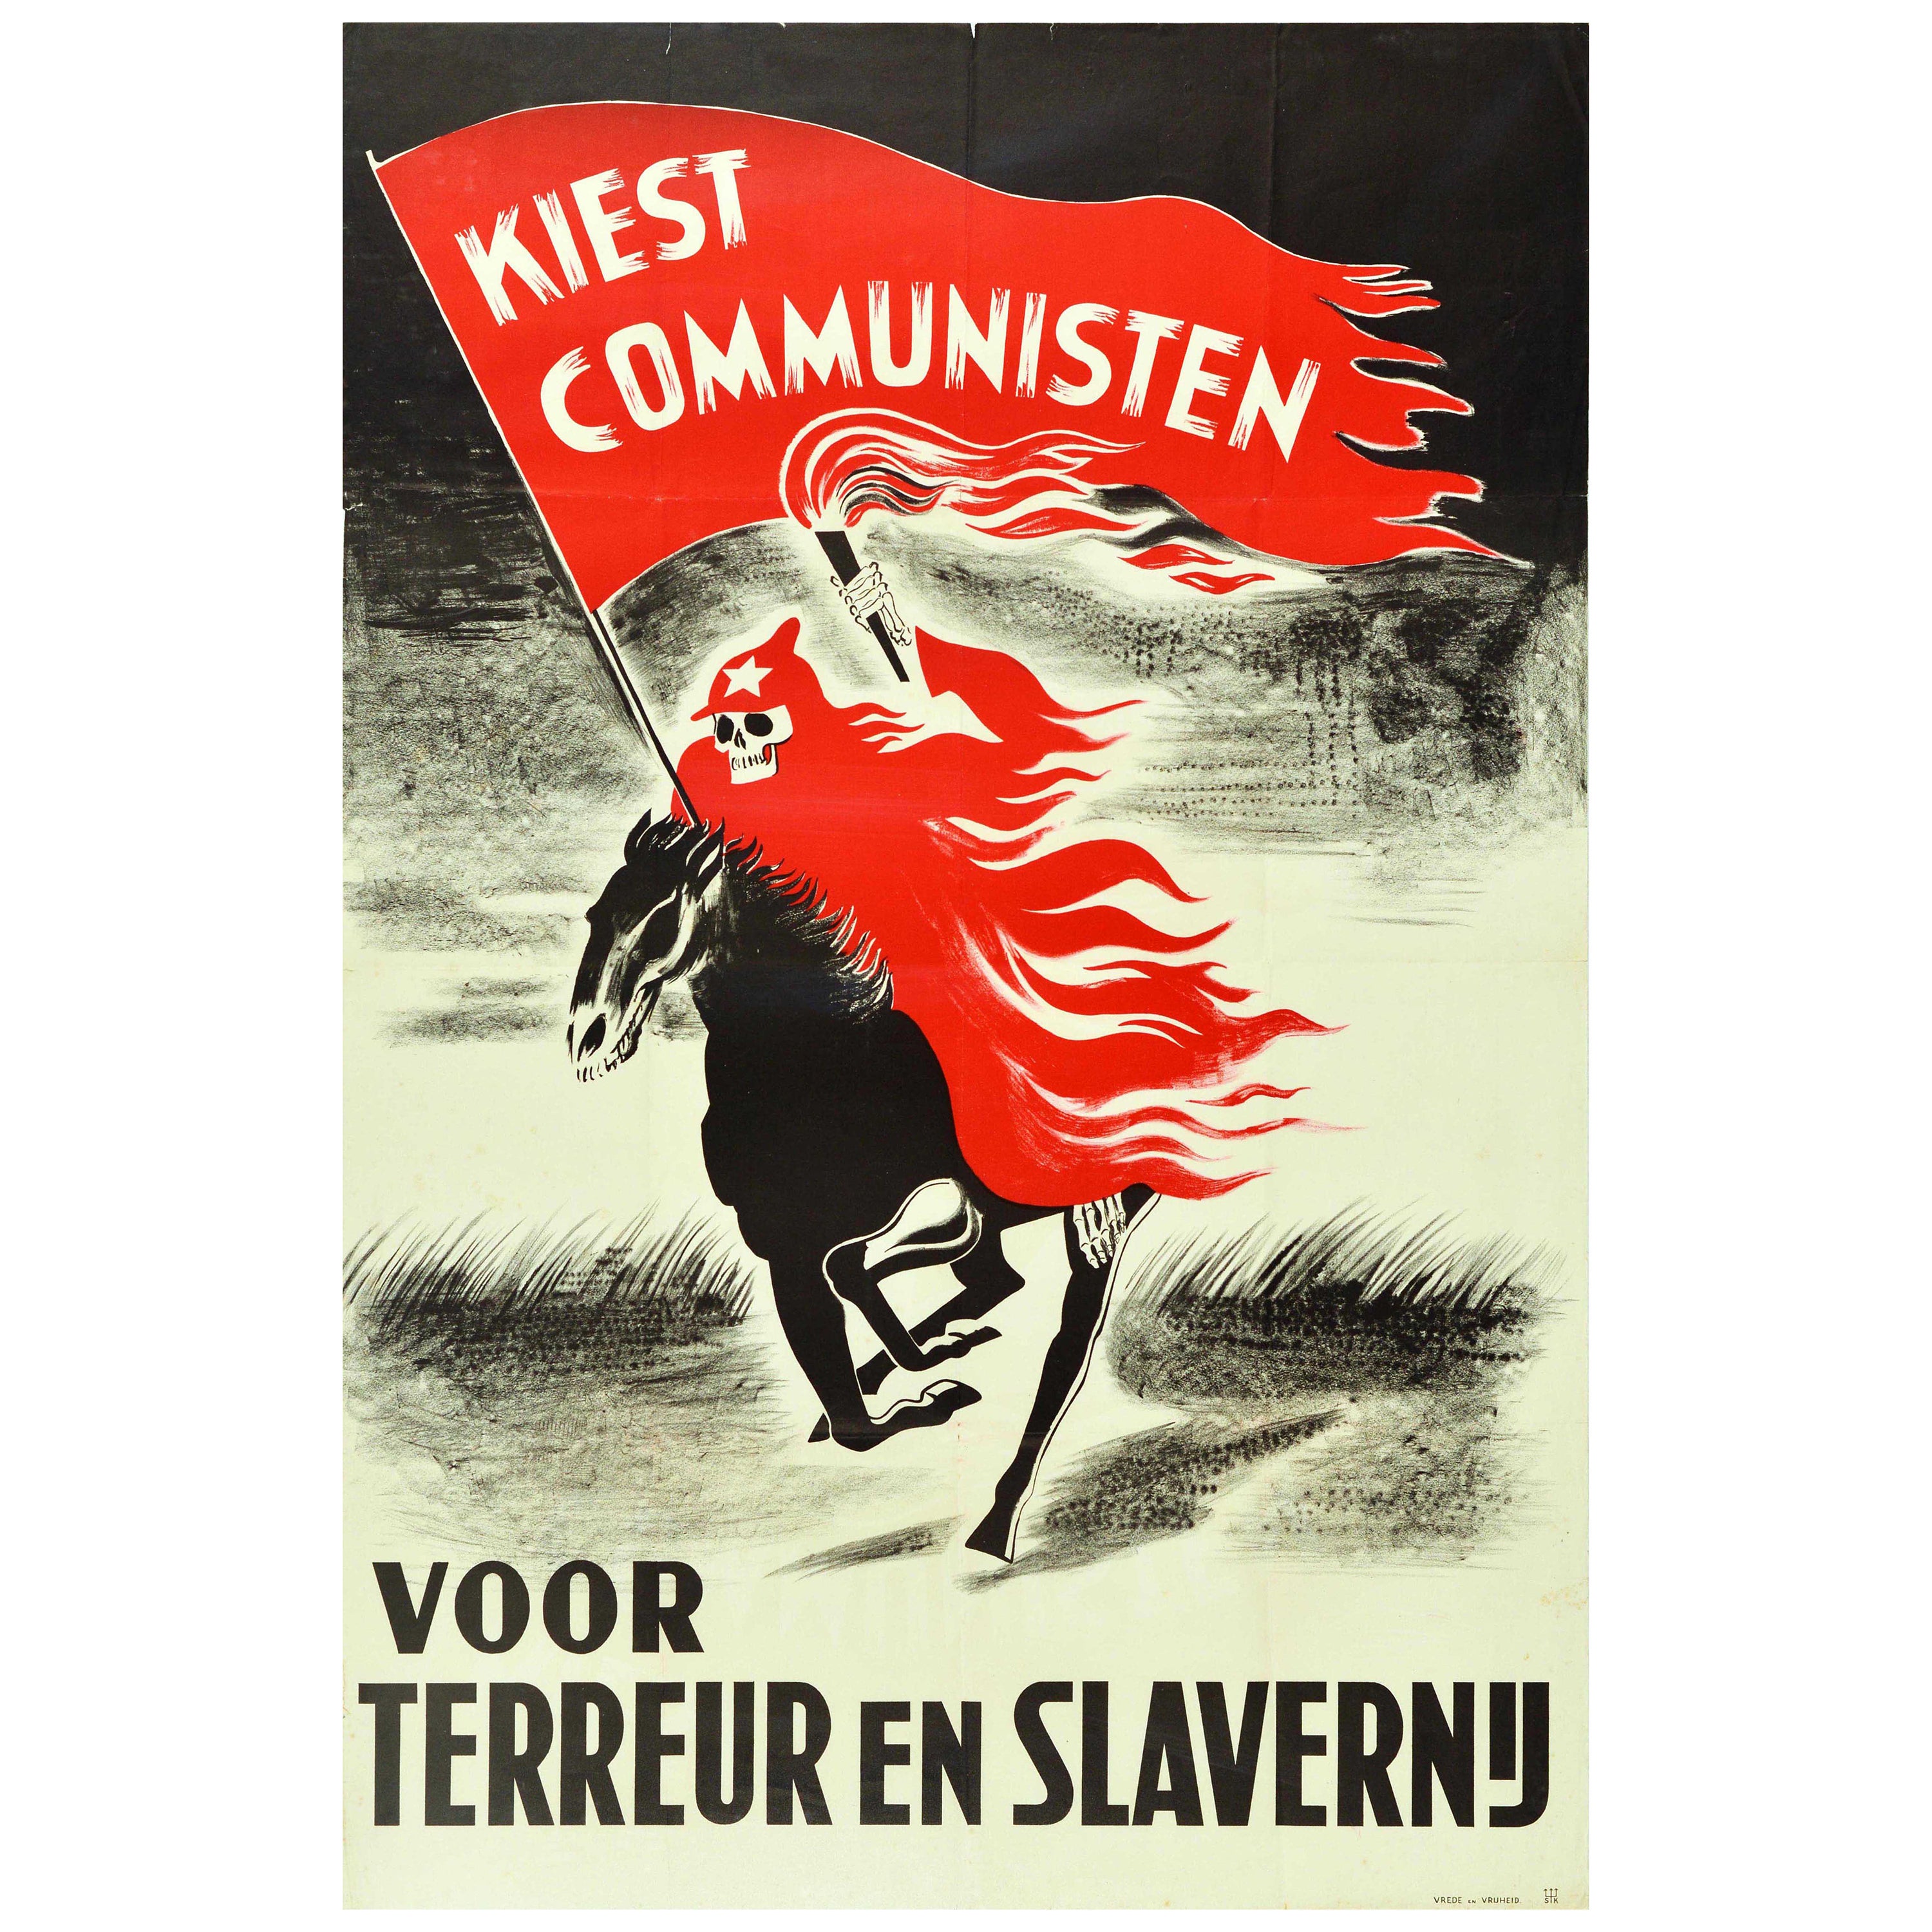 Originales Original-Vintage-Propagandaplakat der niederländischen Wahl, Kommunismus Terror und Sklaverei